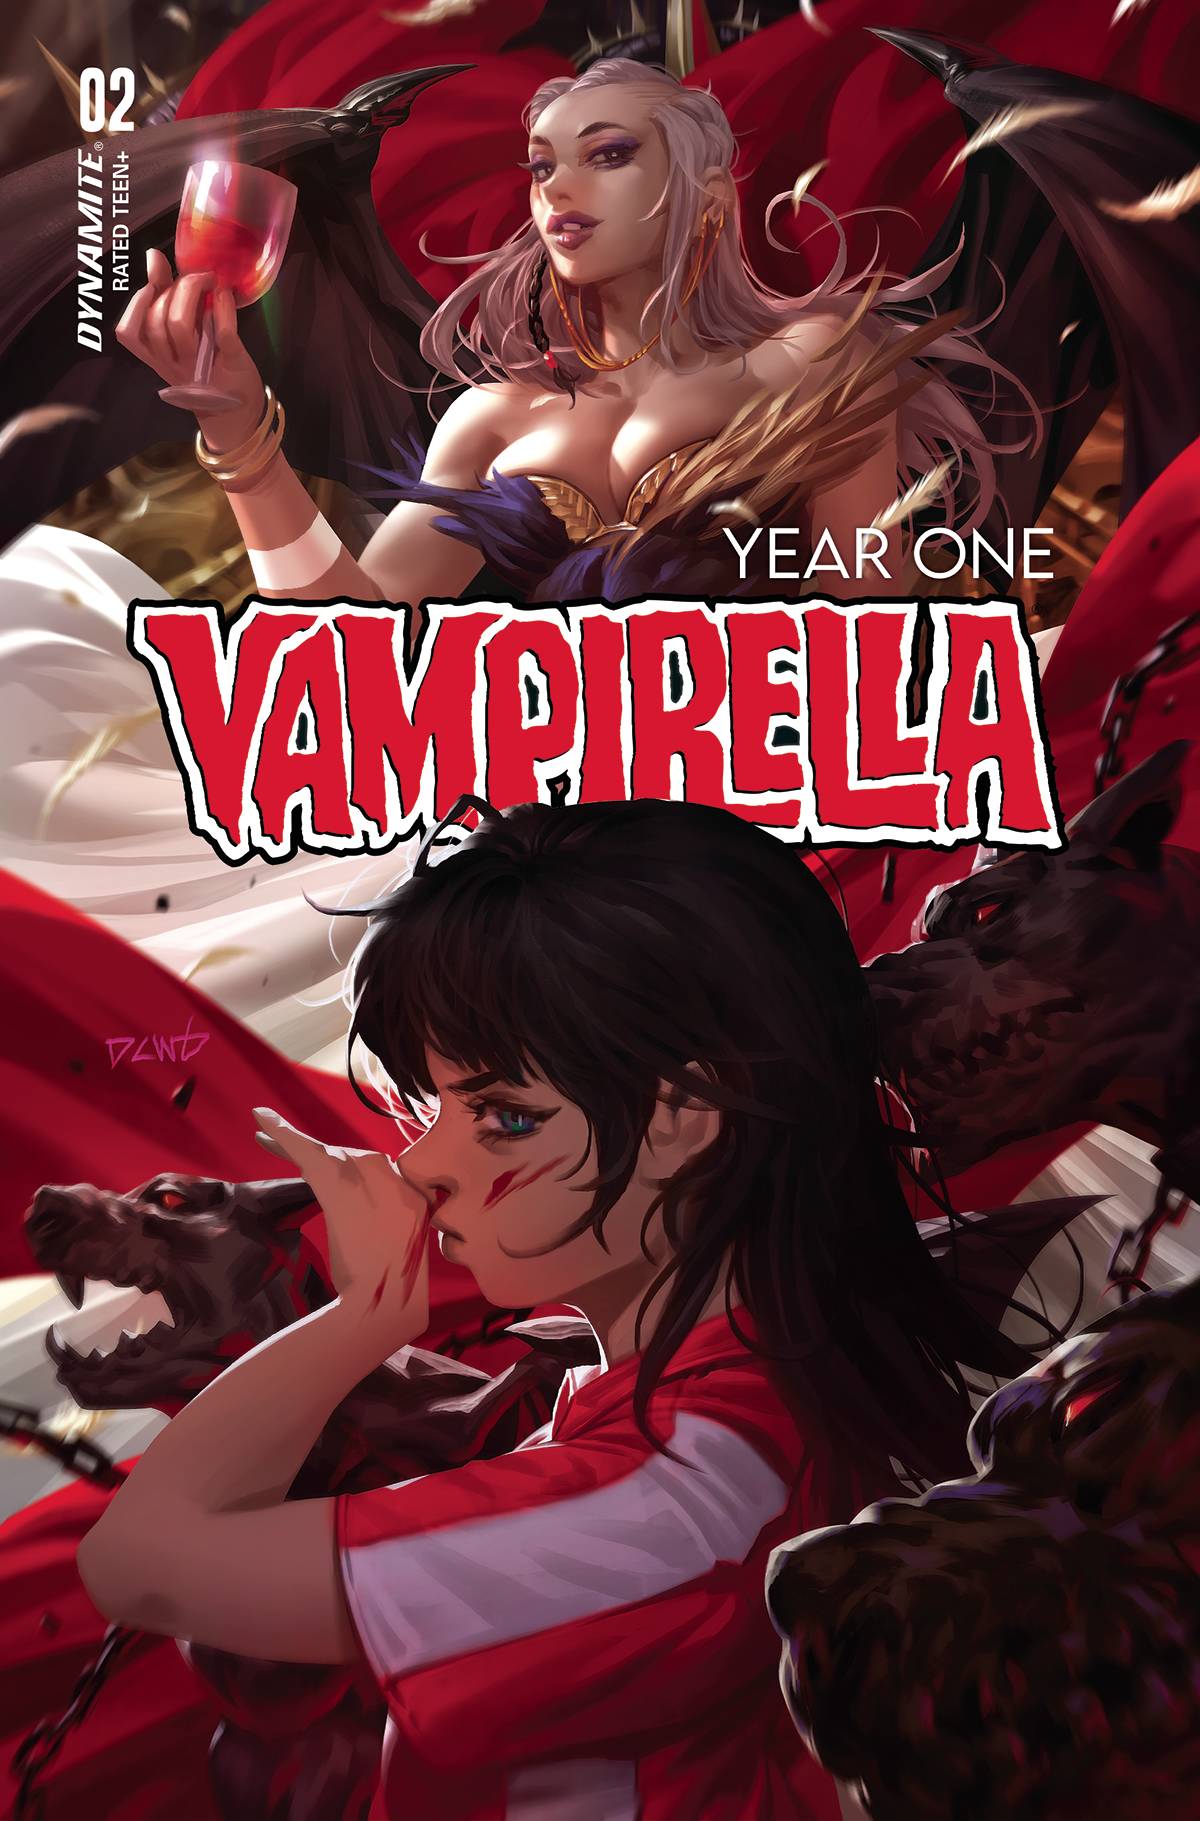 VAMPIRELLA YEAR ONE #2